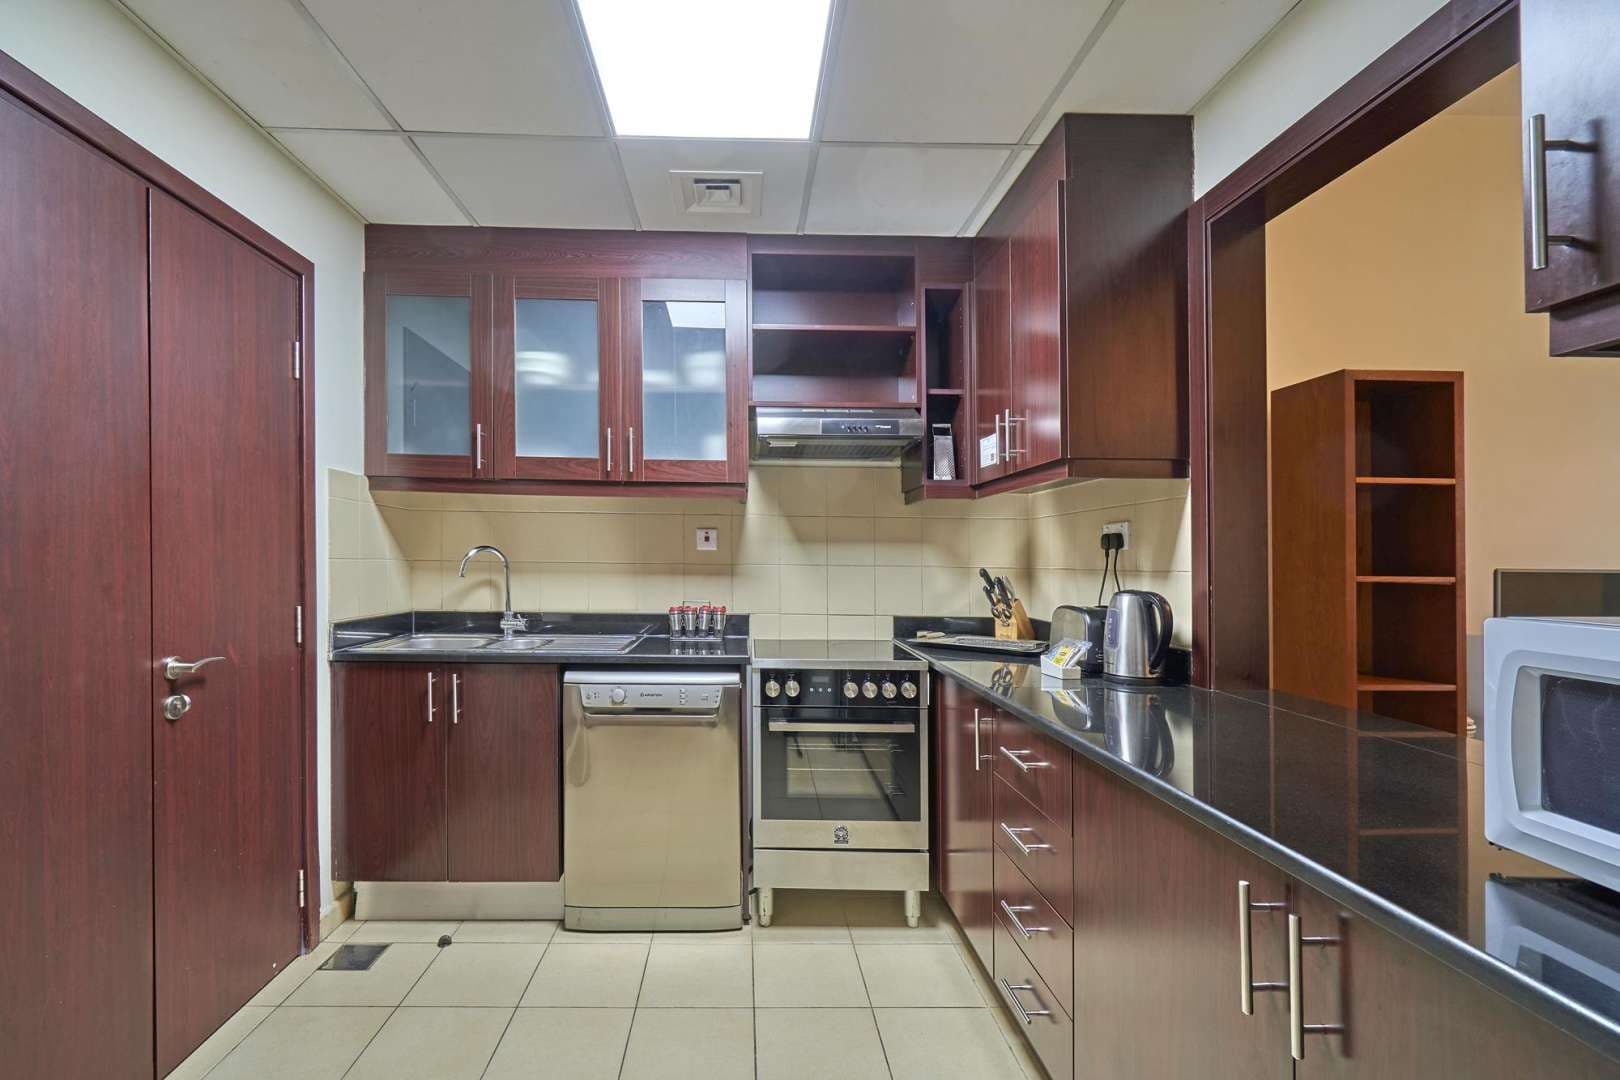 2 Bedroom Apartment For Rent Amwaj Lp05807 19cf60d3689b4200.jpg